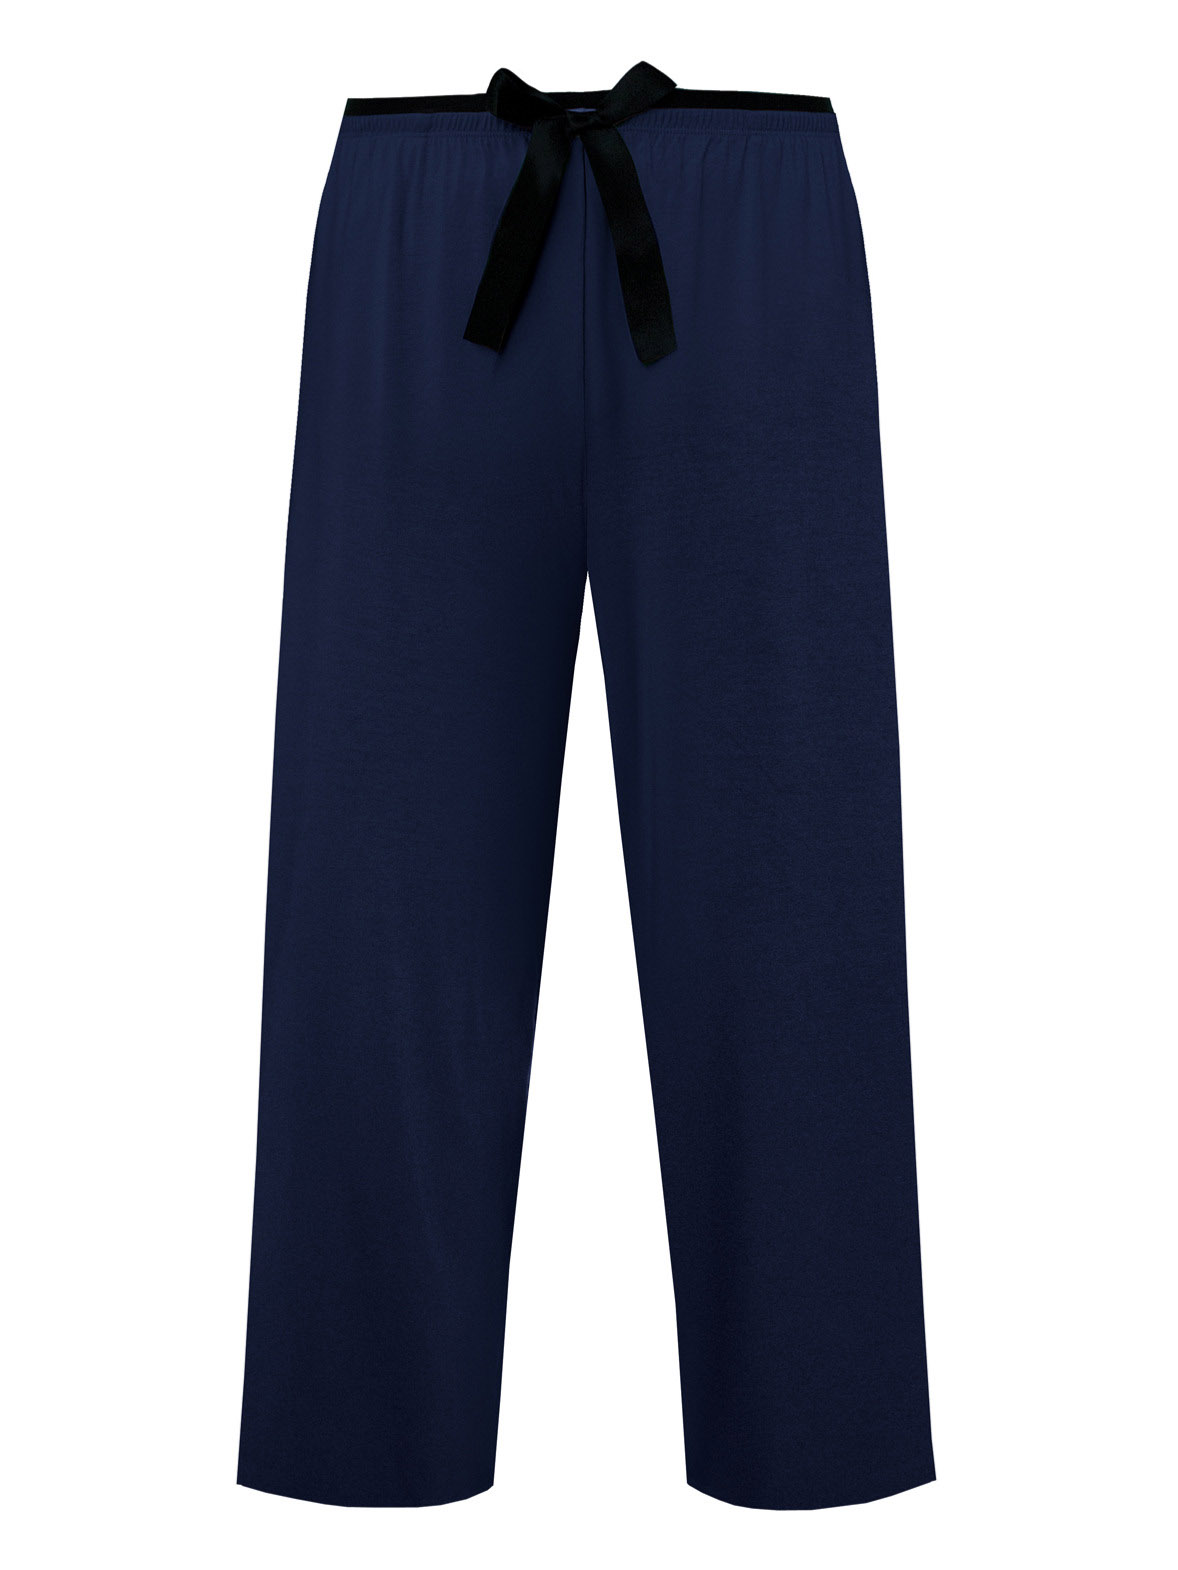 Женские пижамные штаны из нежной вискозы с карманами Nipplex Margot 3/4 #3